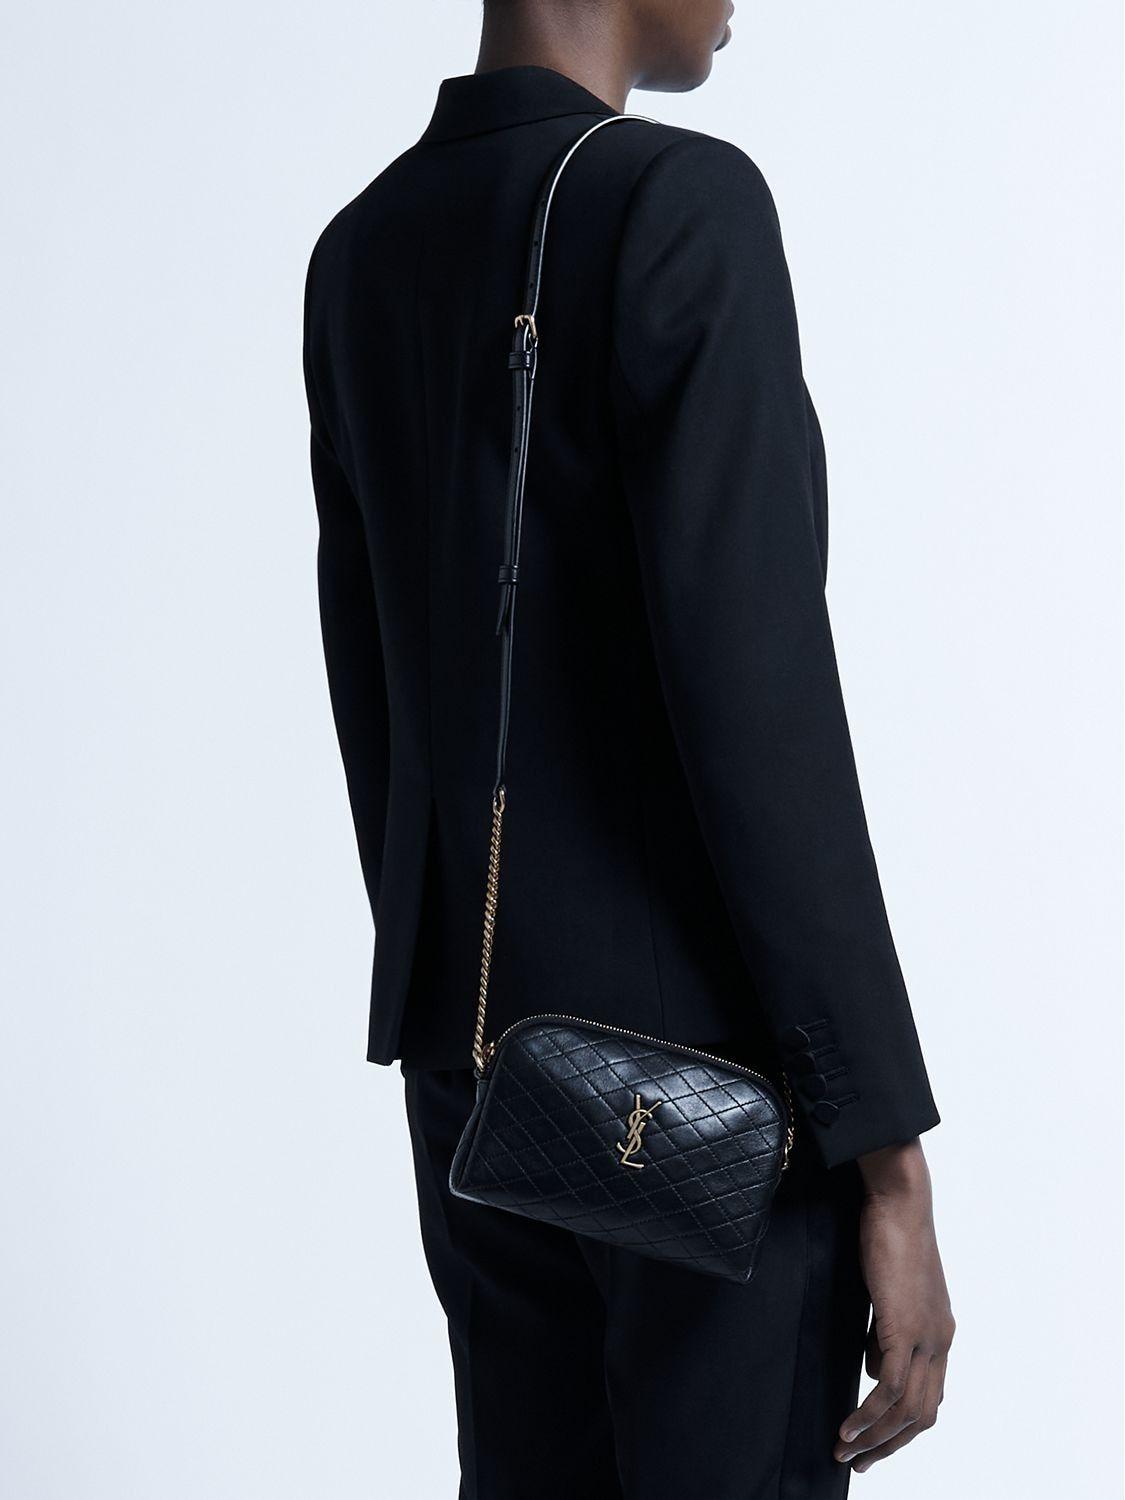 Saint Laurent - Women's 'Gaby' Shoulder Bag - Black - Leather